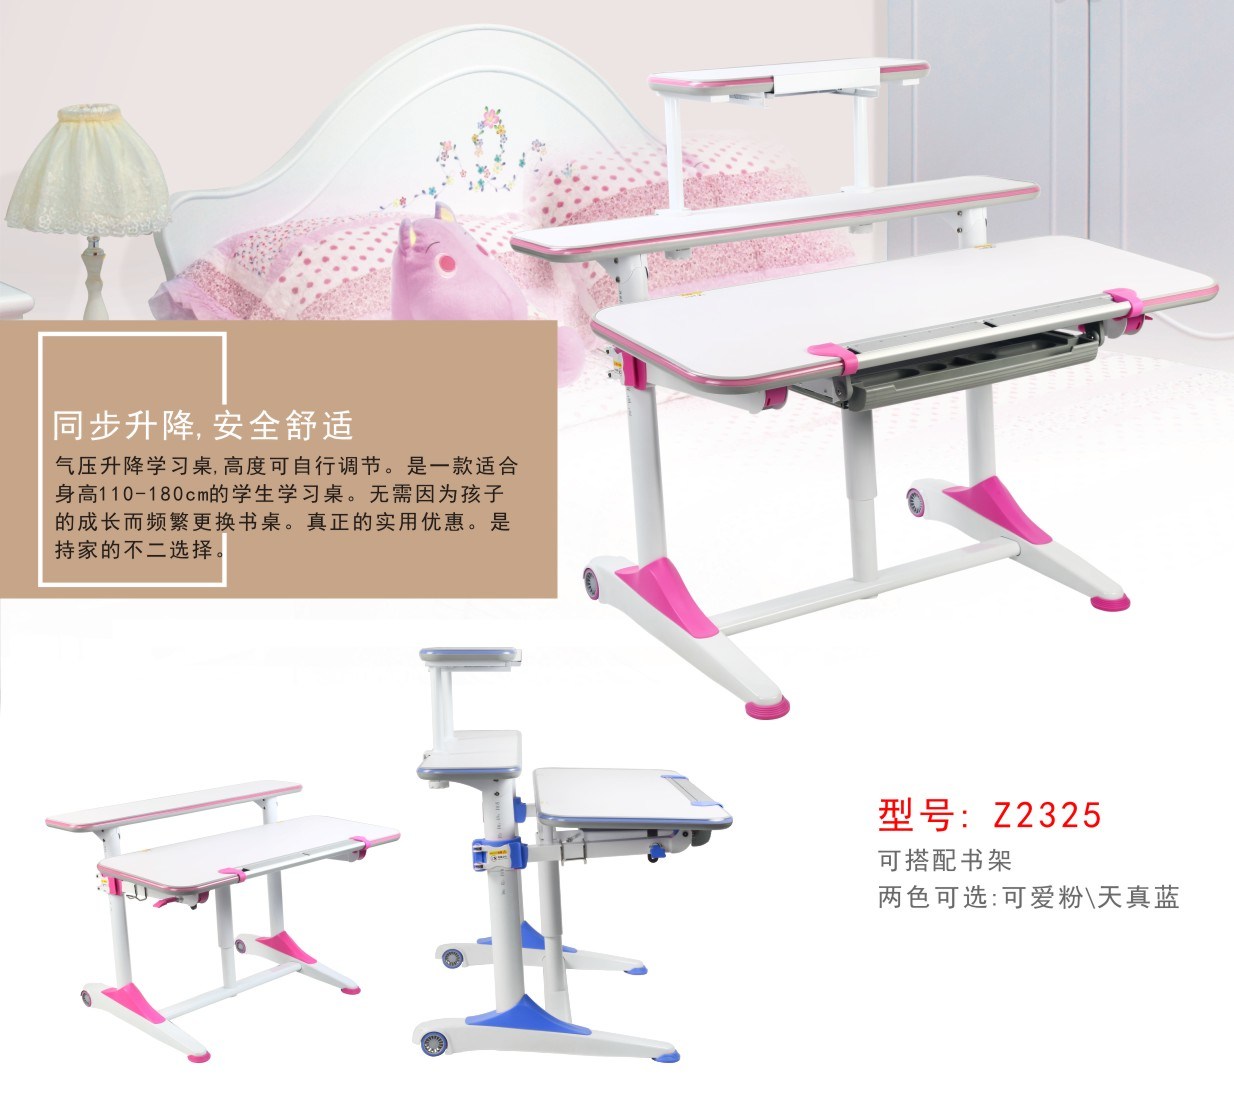 Home Furniture-Manual Height Adjustable Children Desk for Kids Study (Z2325)